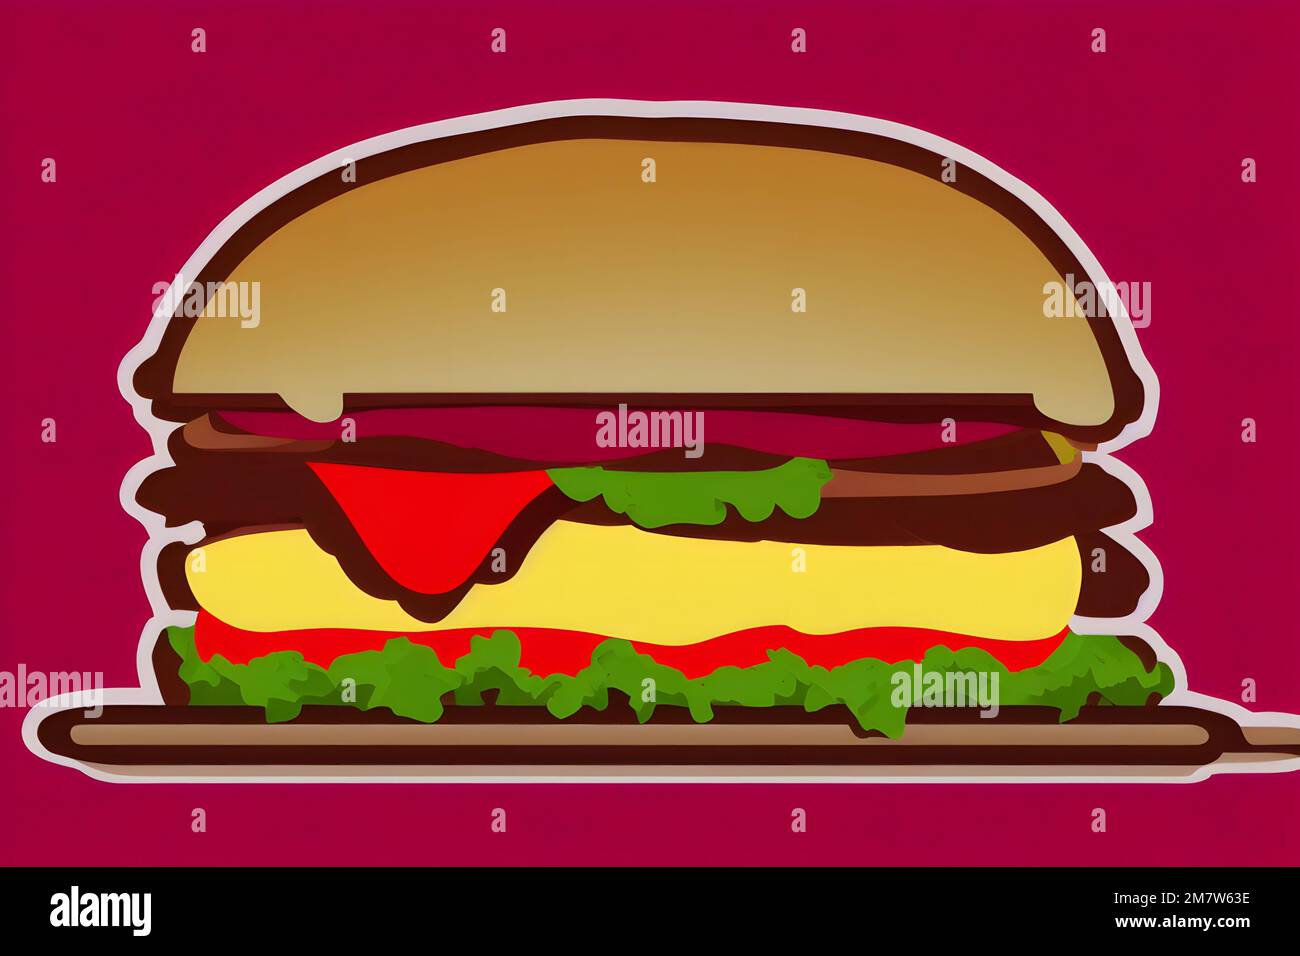 Illustrazione di hamburger in stile retrò, un classico fast food Foto Stock